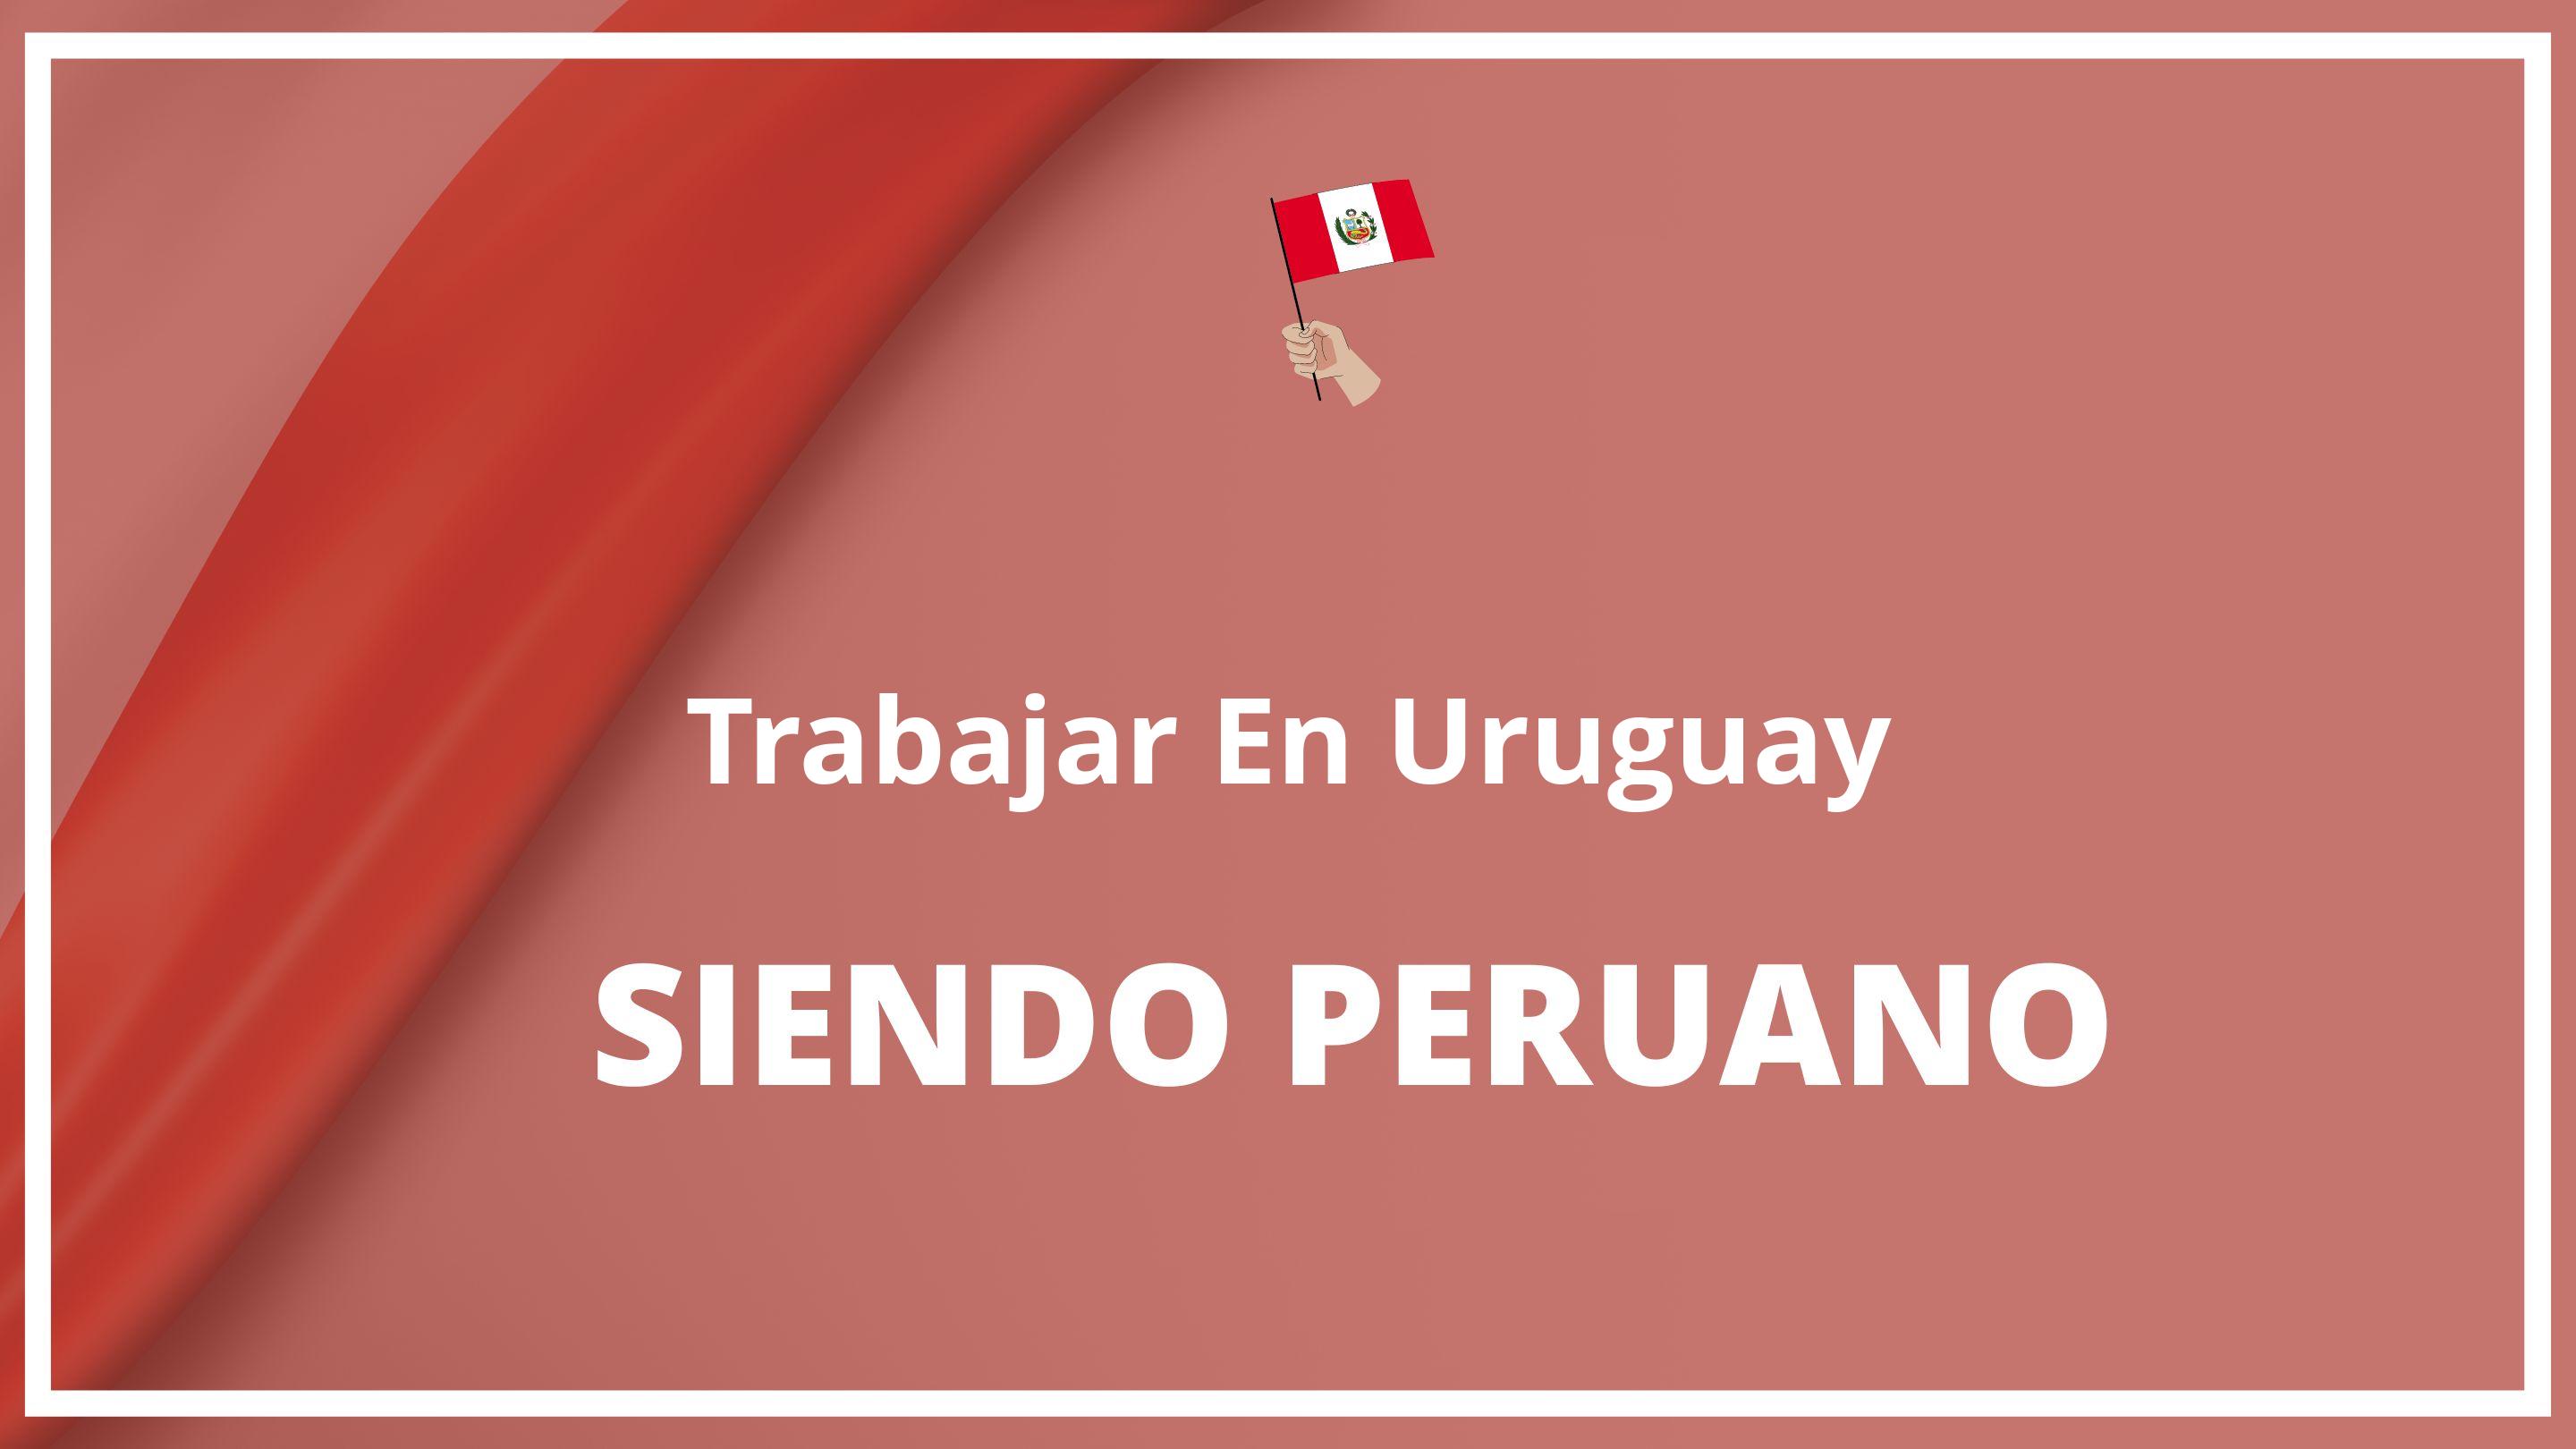 Como trabajar en uruguay siendo peruano